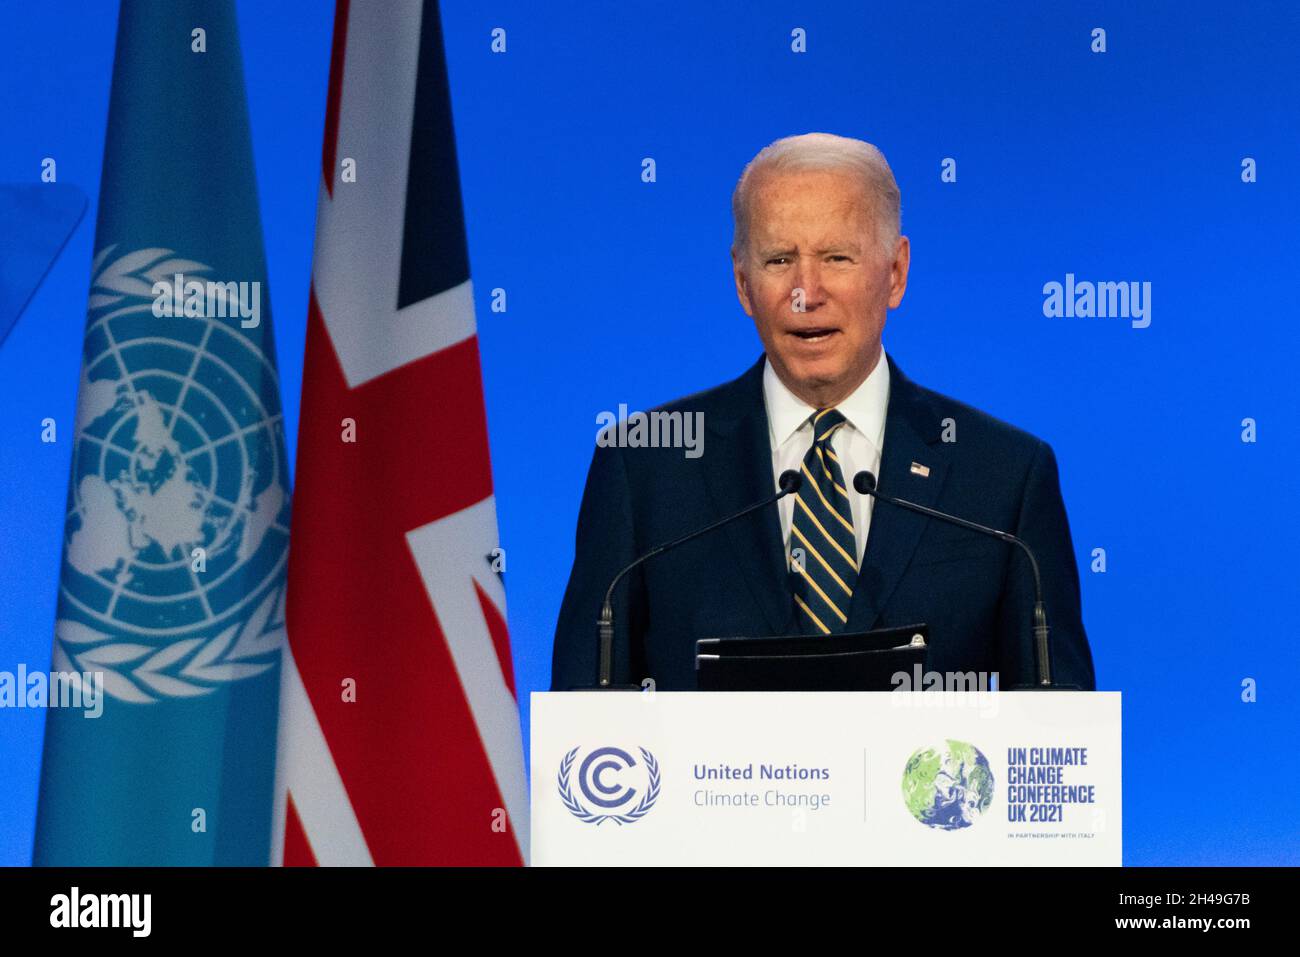 Glasgow, Schottland, Großbritannien. November 2021. US-Präsident Joe Biden hält eine Rede vor der UN-Klimakonferenz COP26 in Glasgow. Iain Masterton/Alamy Live News. Stockfoto